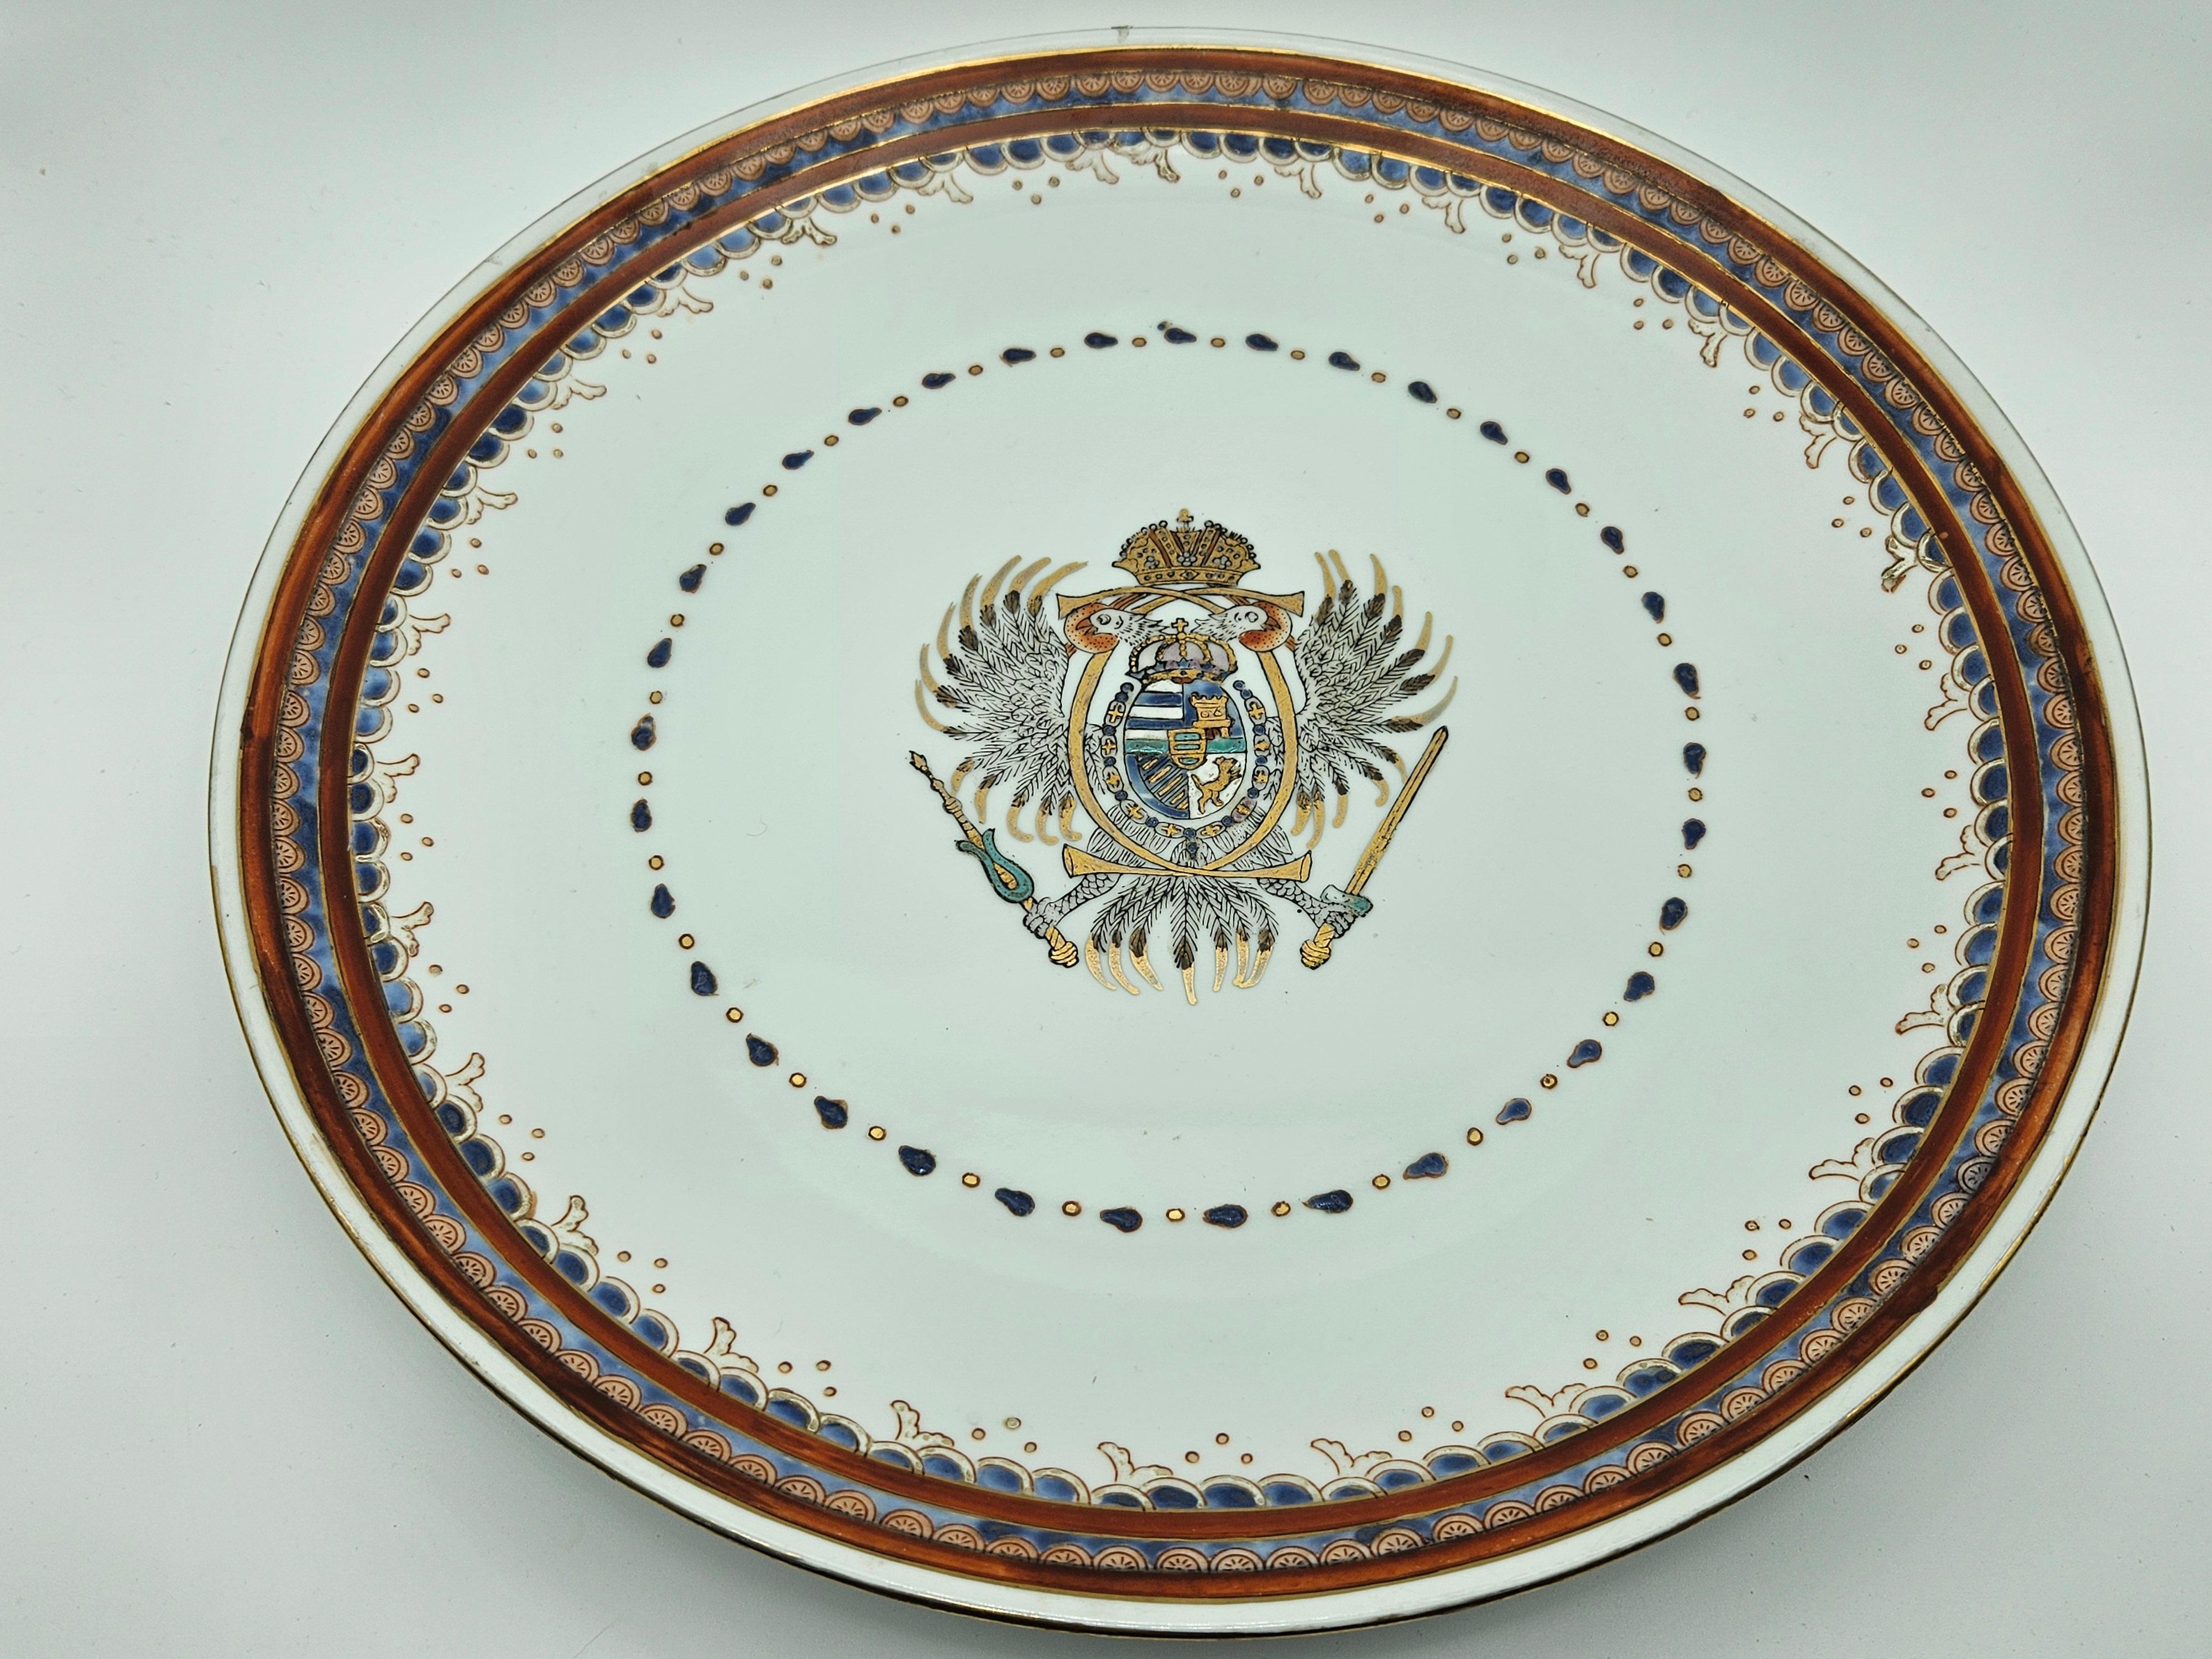 Paire d'assiettes à décor polychrome et bordure en relief.
Production européenne du début du 20e siècle.

Ils présentent des signes normaux d'usure dus à l'âge et à l'utilisation.